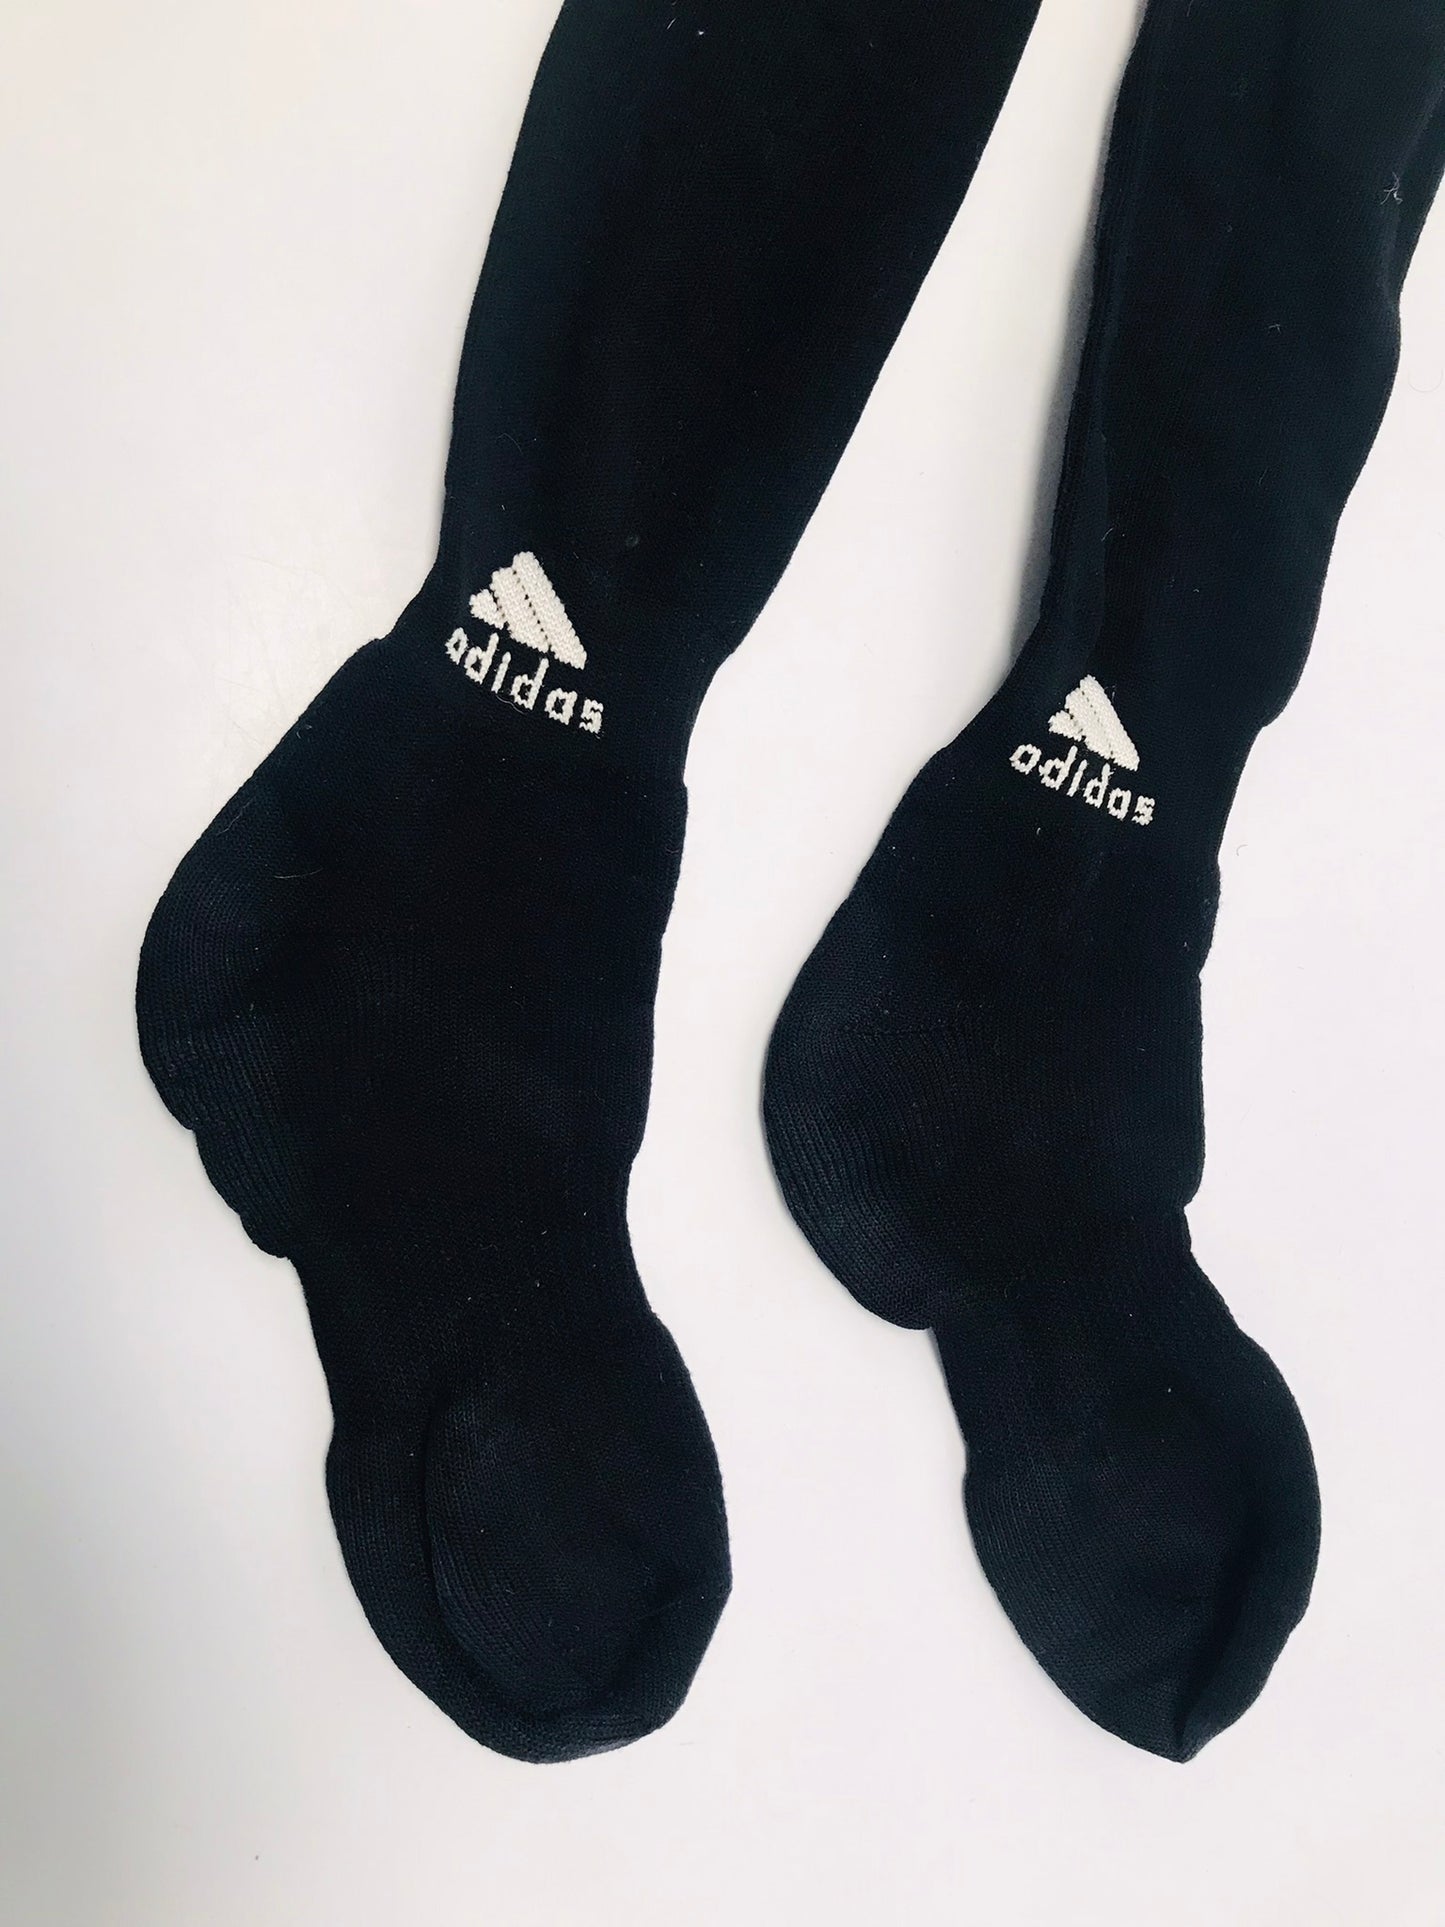 Soccer Socks Men's Size 9-12 Adidas Black White